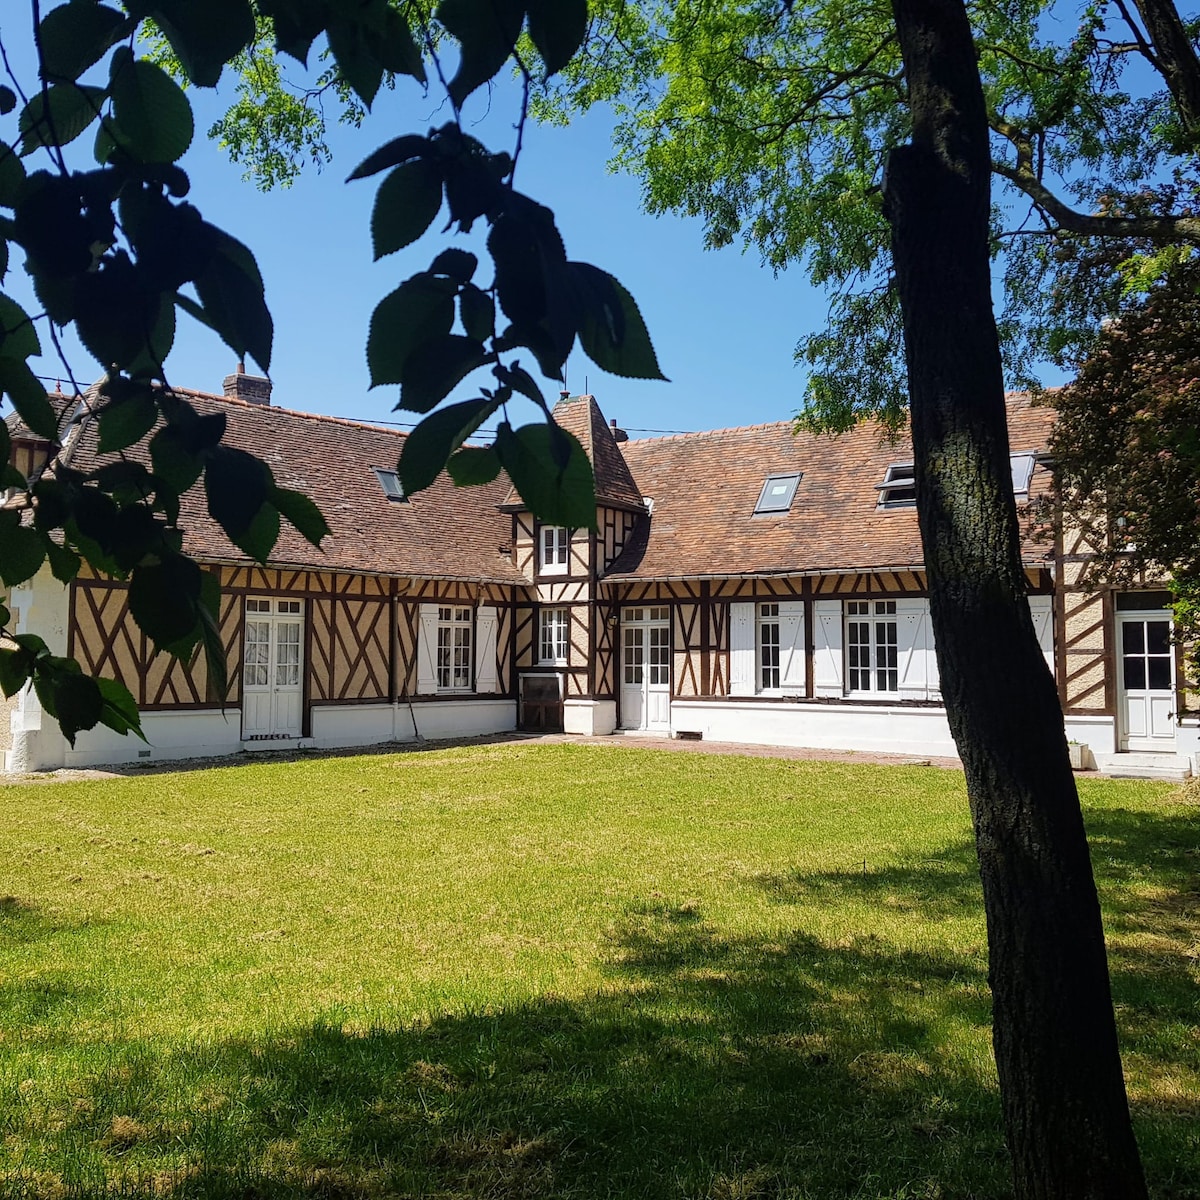 Belle et grande maison normande en Picardie.